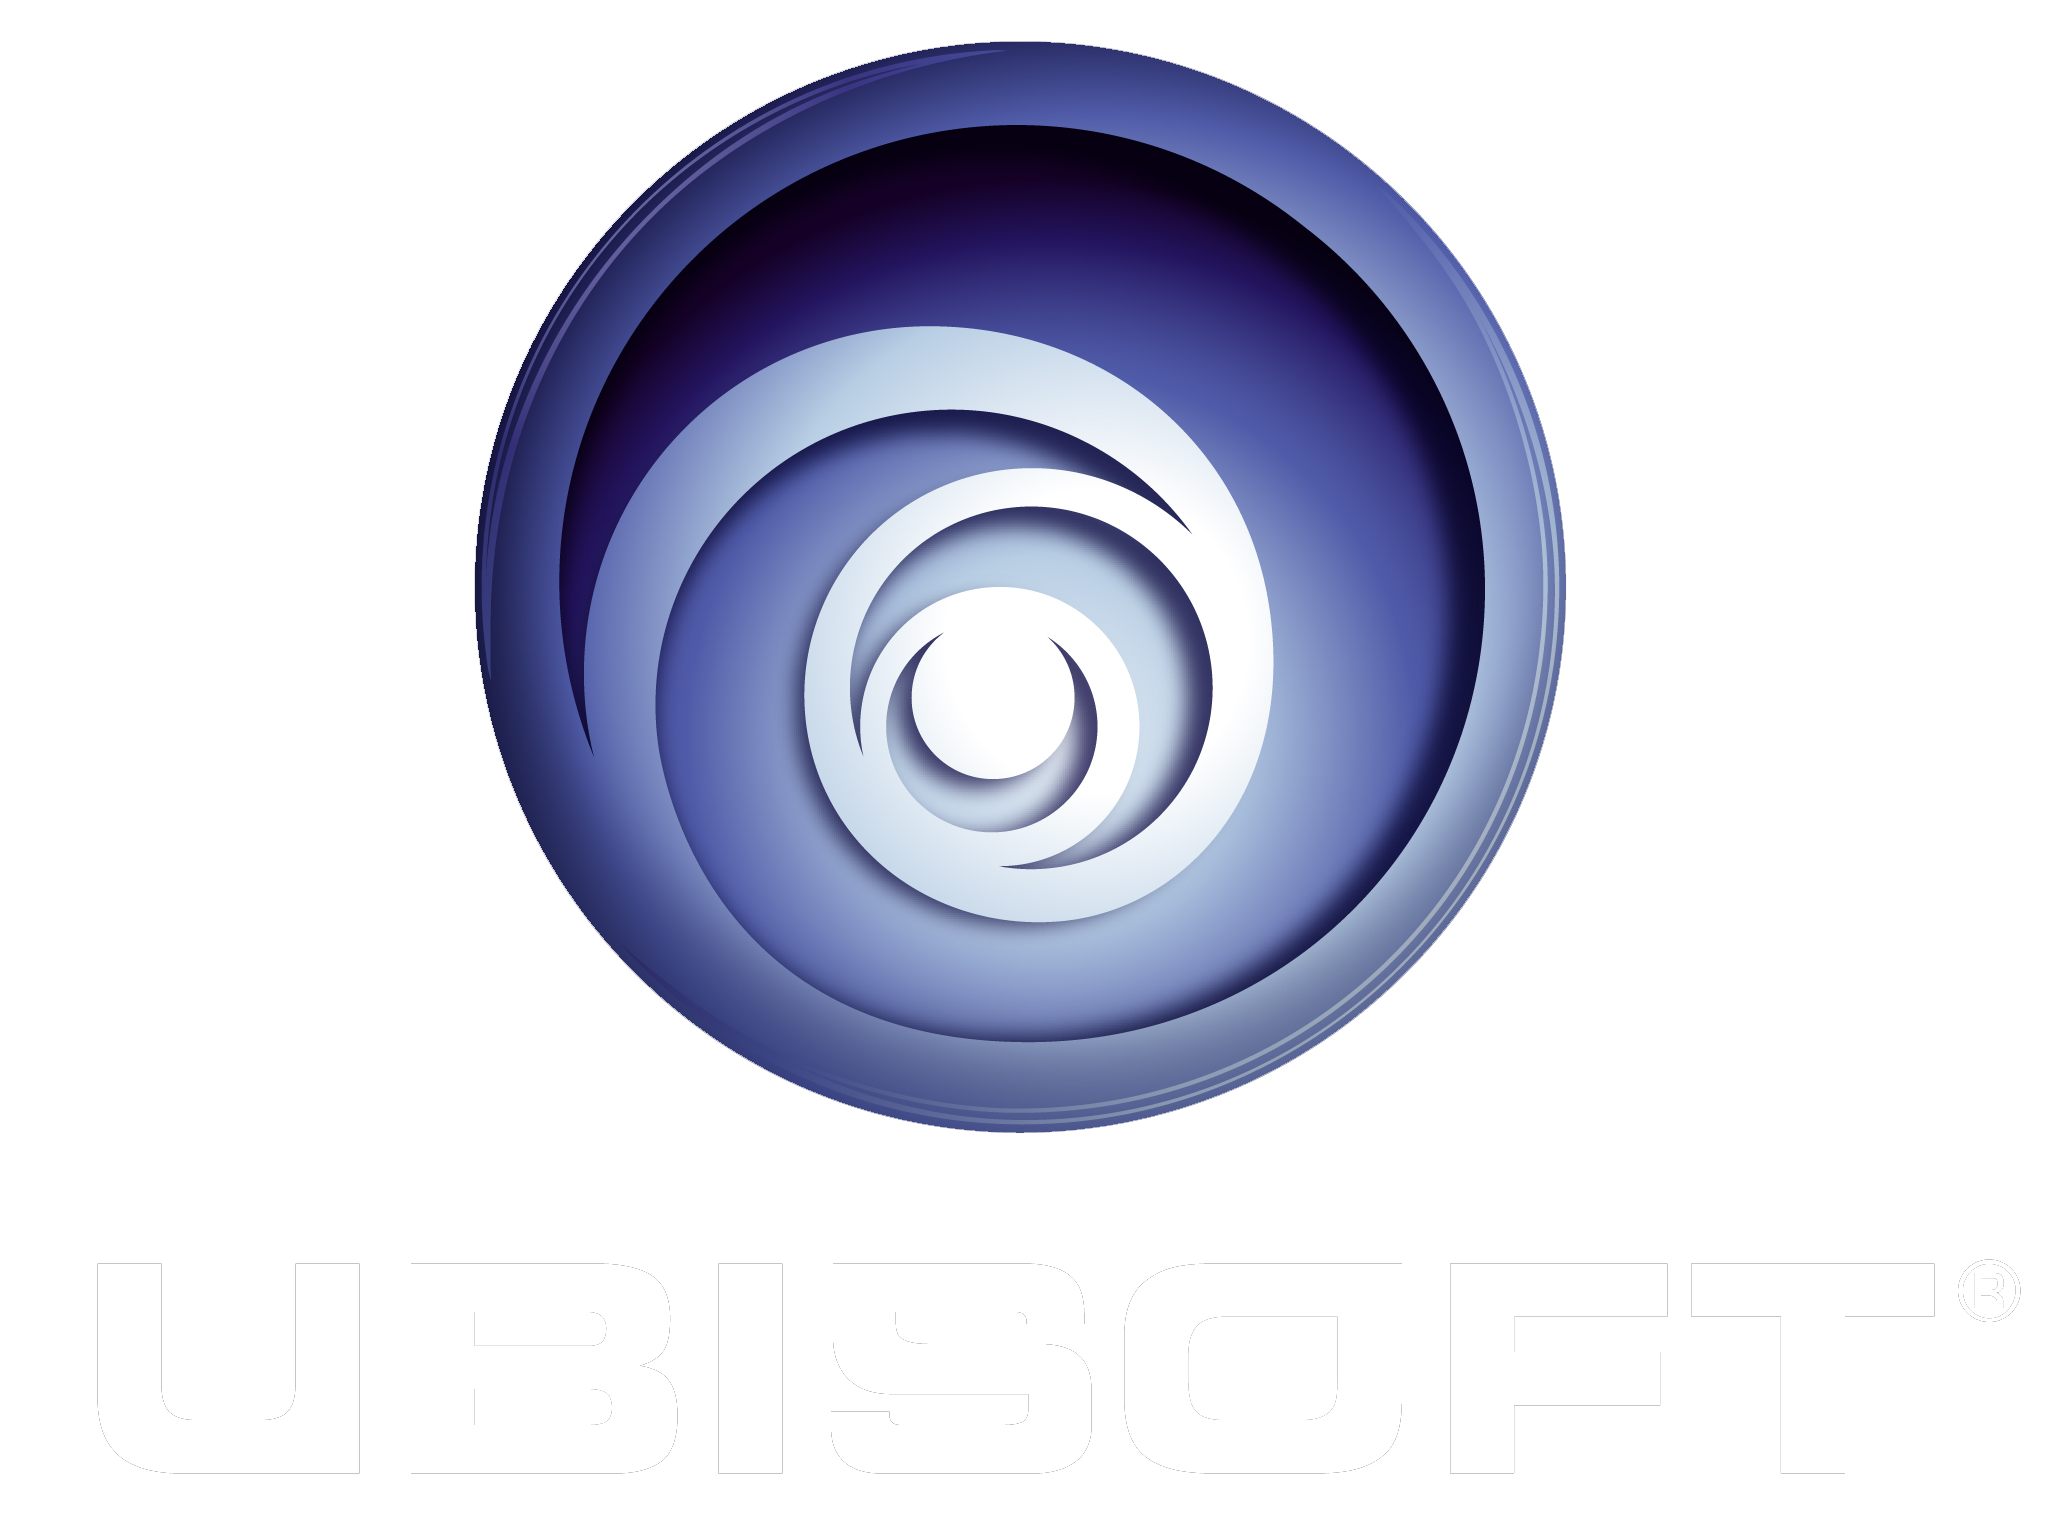 صورة للصانع Ubisoft
